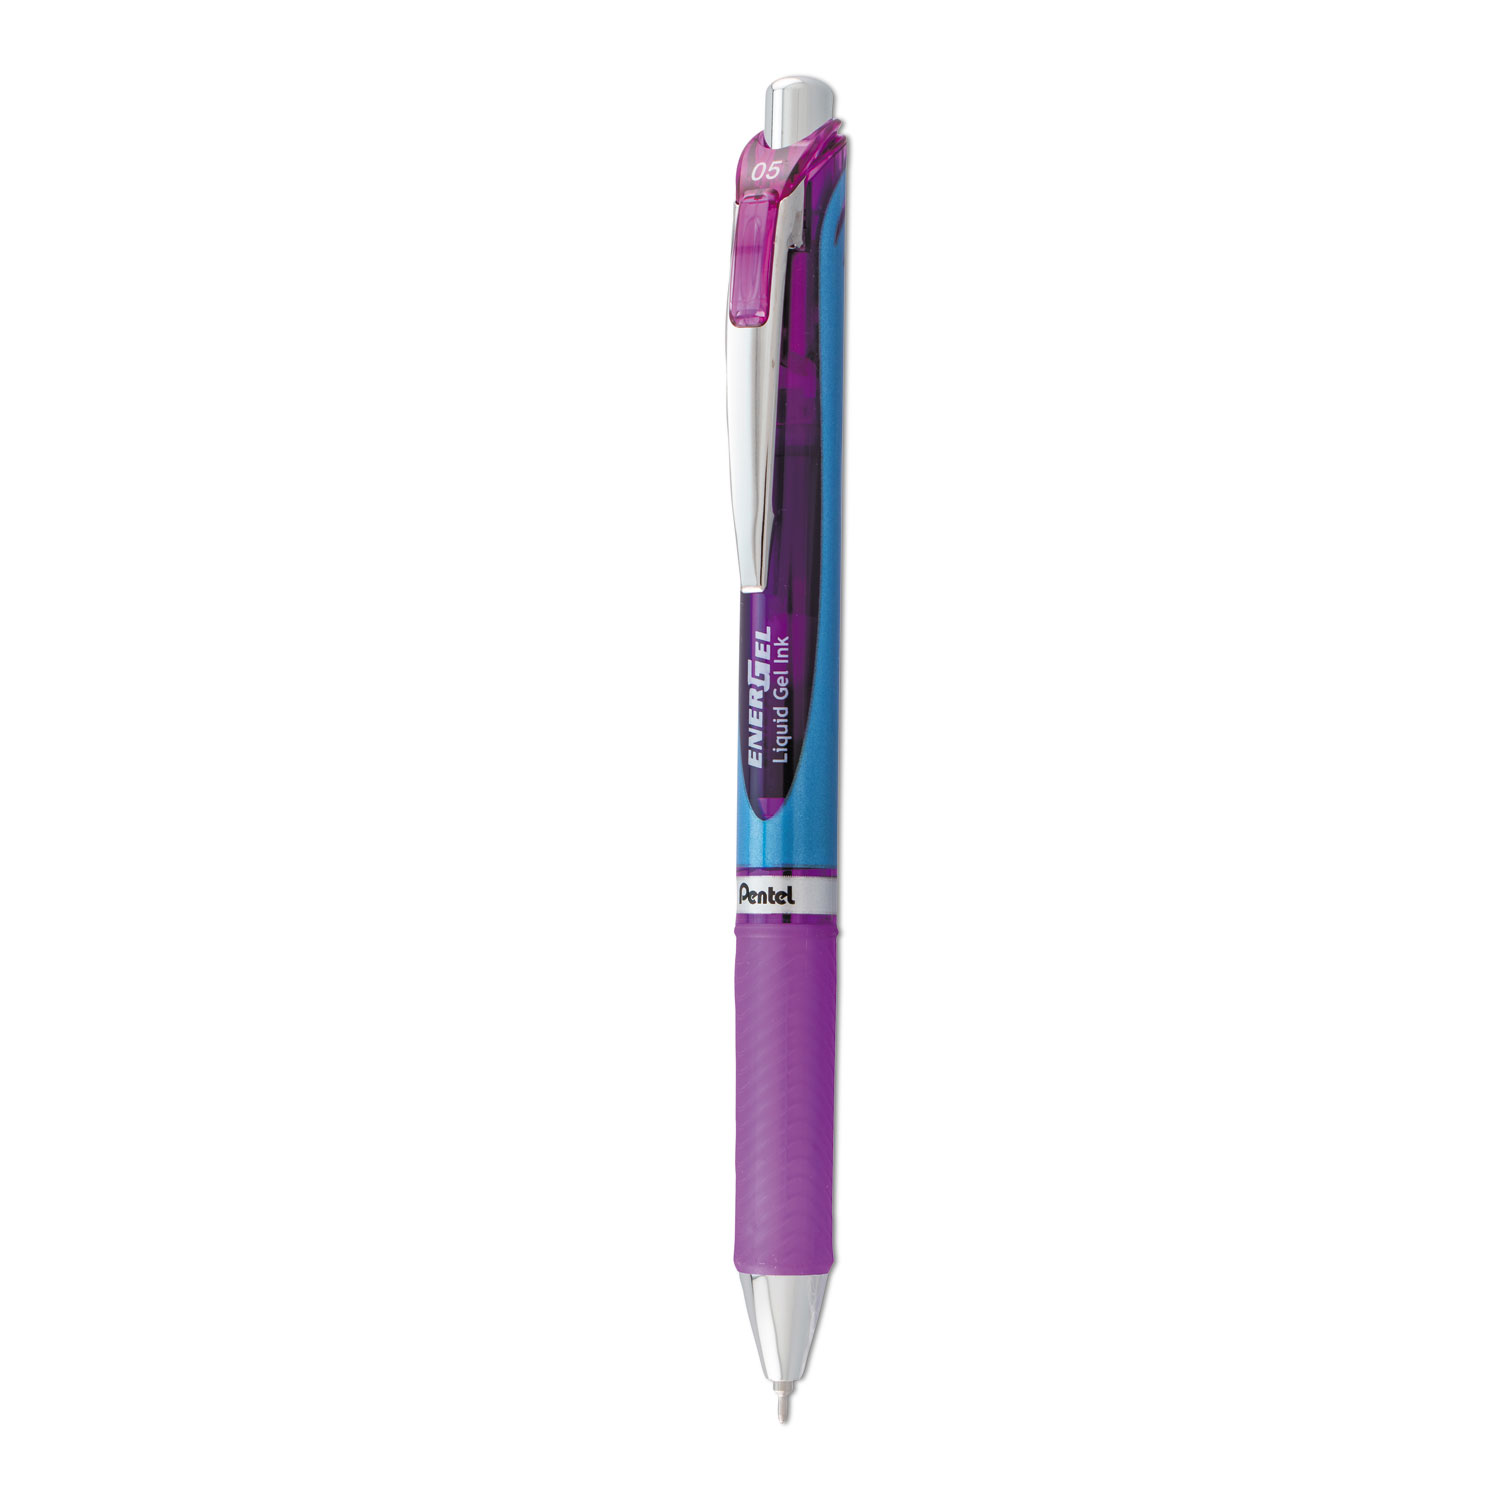  Pentel BLN75V EnerGel RTX Retractable Gel Pen, Fine 0.5mm, Violet Ink, Silver/Violet Barrel (PENBLN75V) 